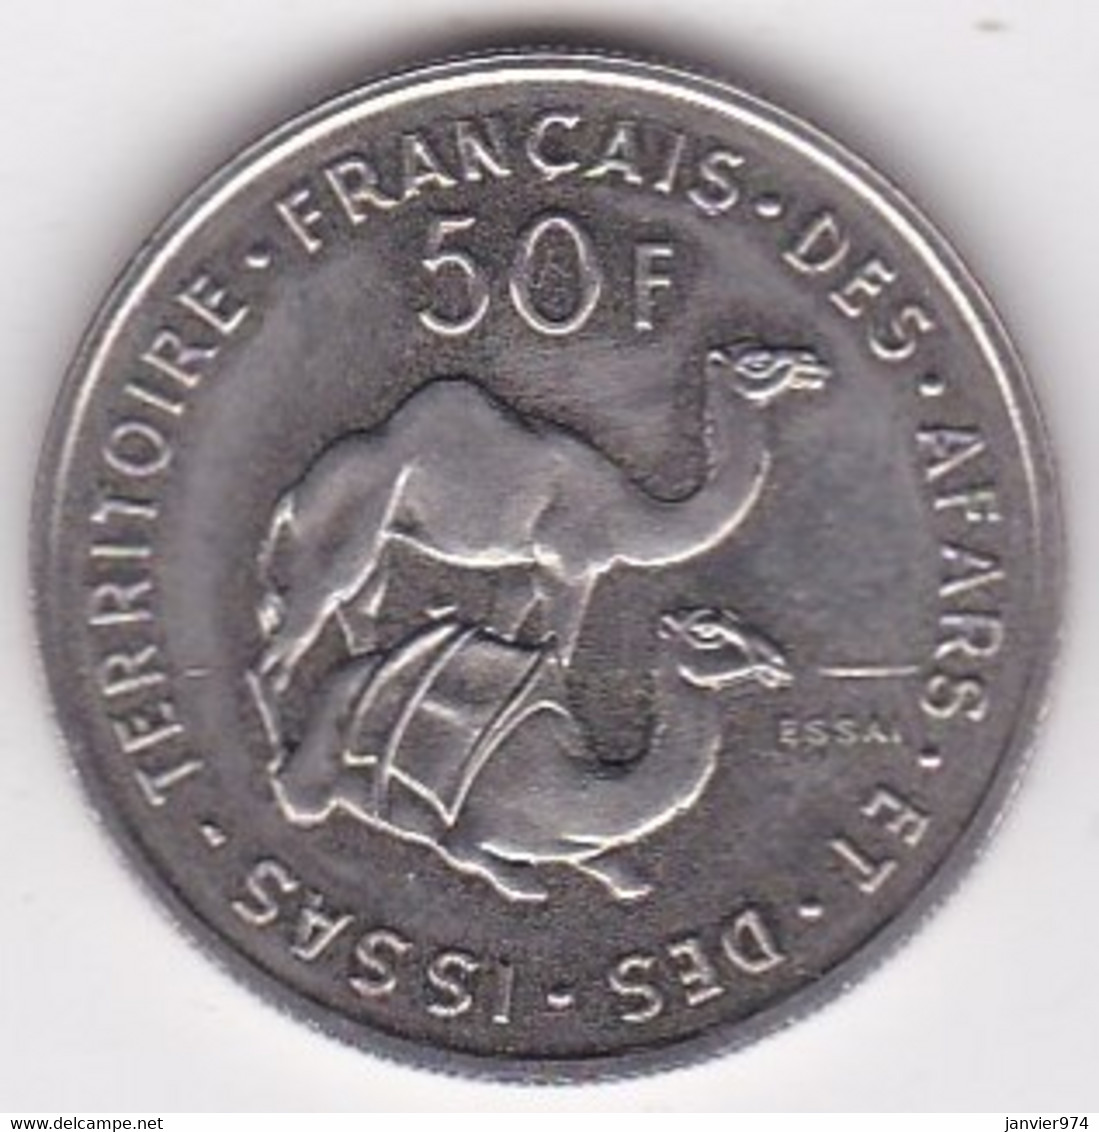 Territoire Français Des AFARS Et Des ISSAS 50 Francs ESSAI 1970 Cupro Nickel KM# E6 - Djibouti